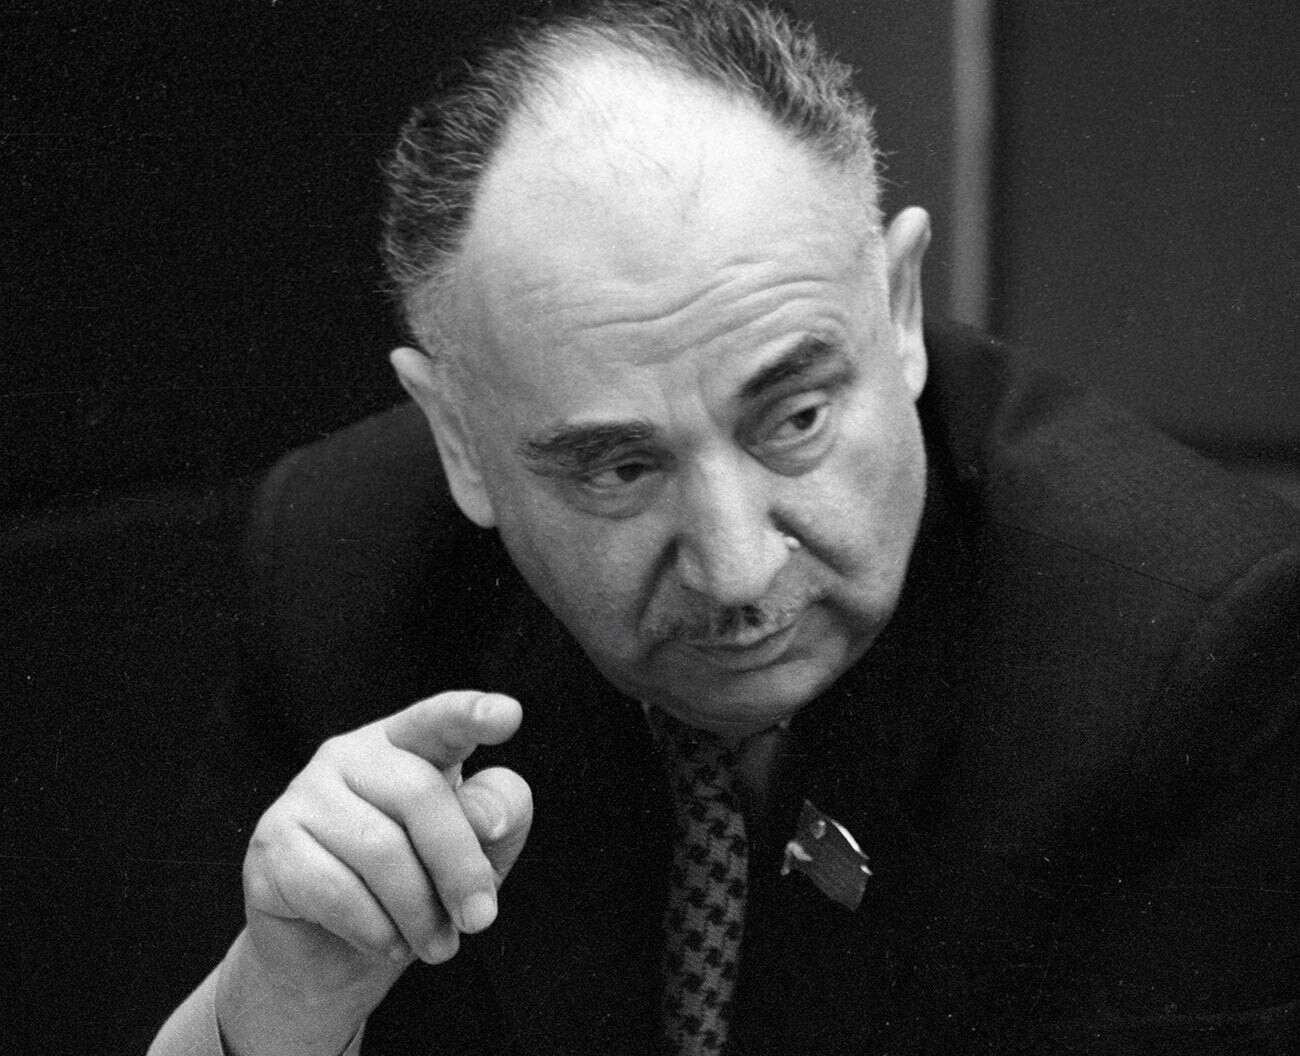 Iósif Grigulévich, miembro correspondiente de la Academia de Ciencias de la URSS, historiador y orientalista soviético. 